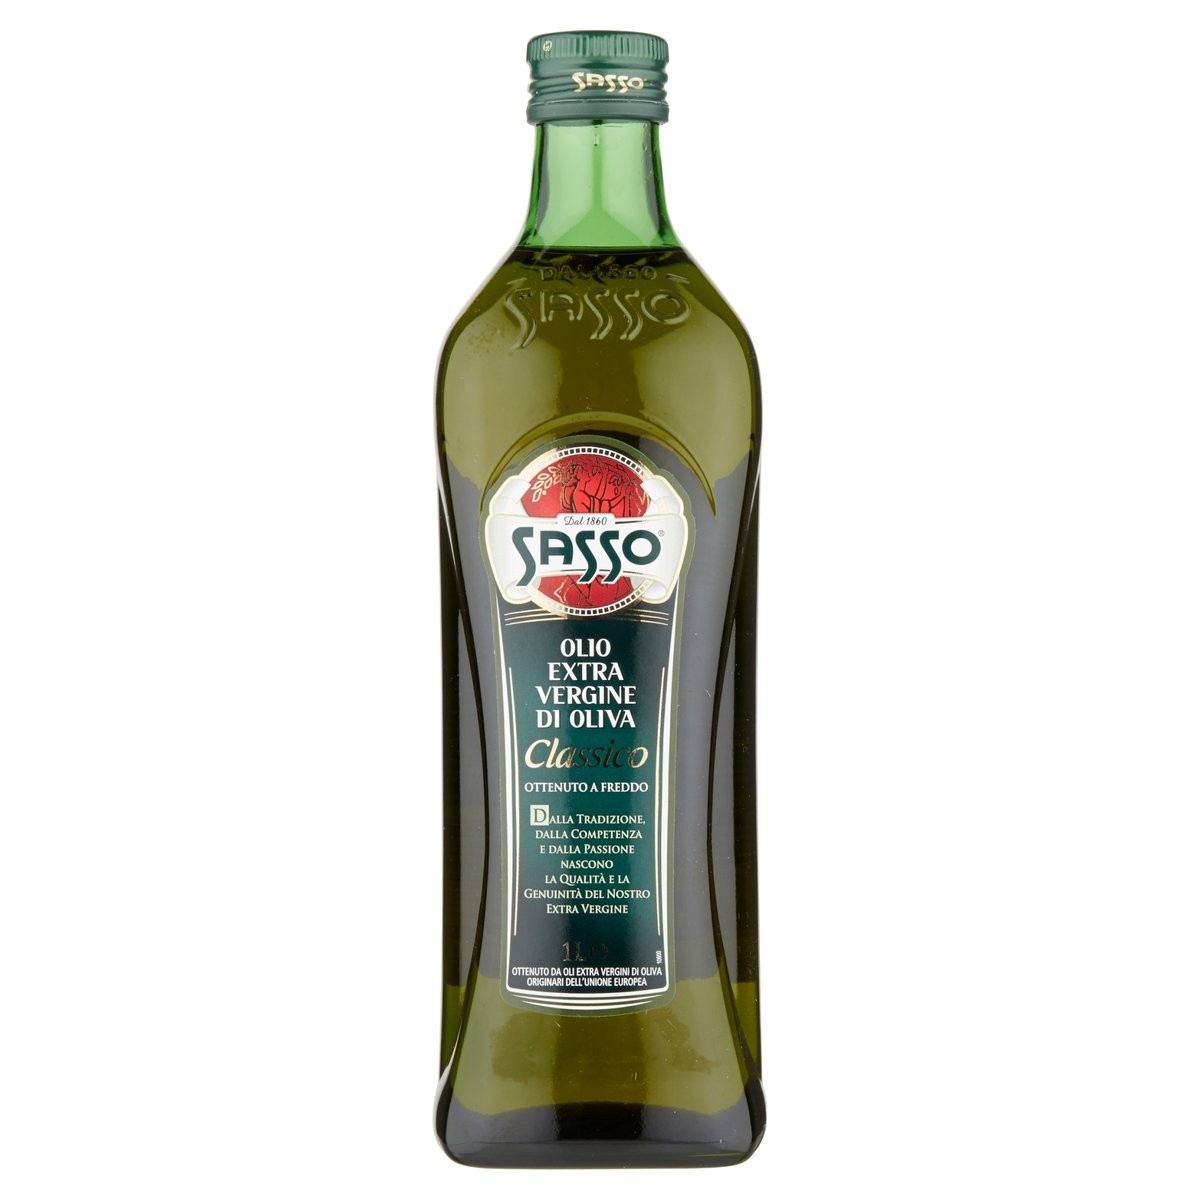 Sasso Olio extravergine di oliva classico